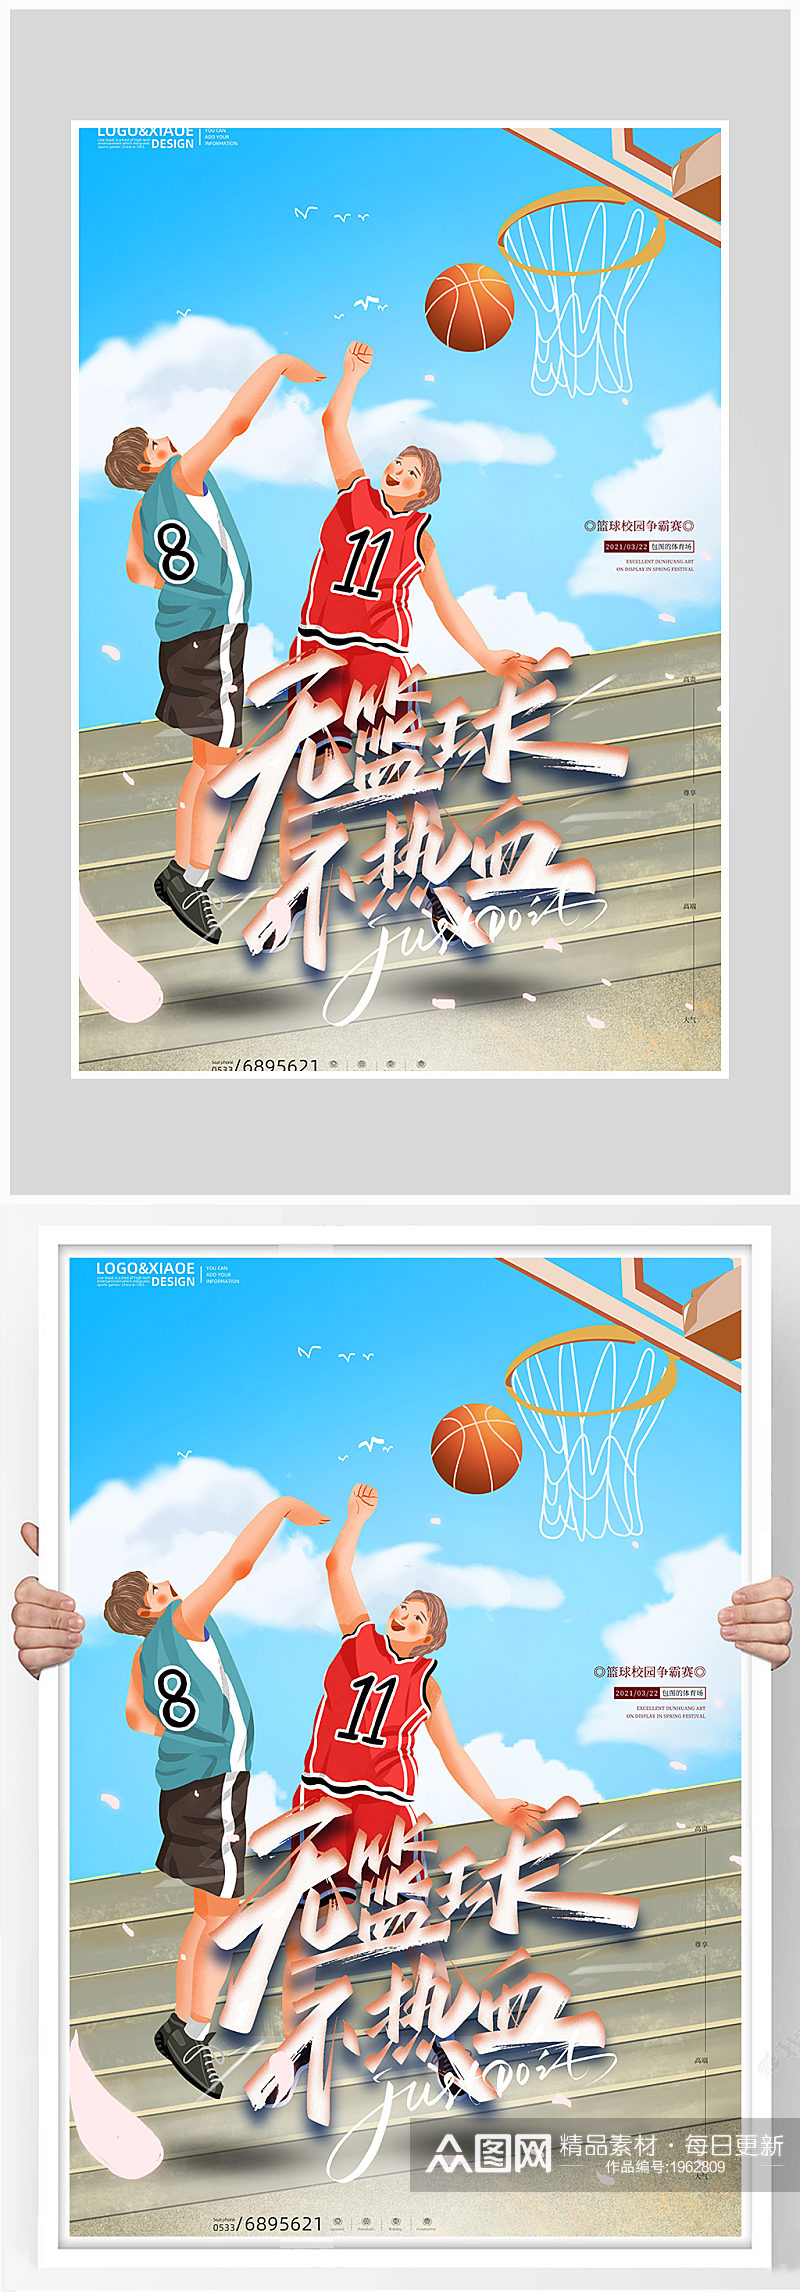 创意质感篮球运动健身海报设计素材